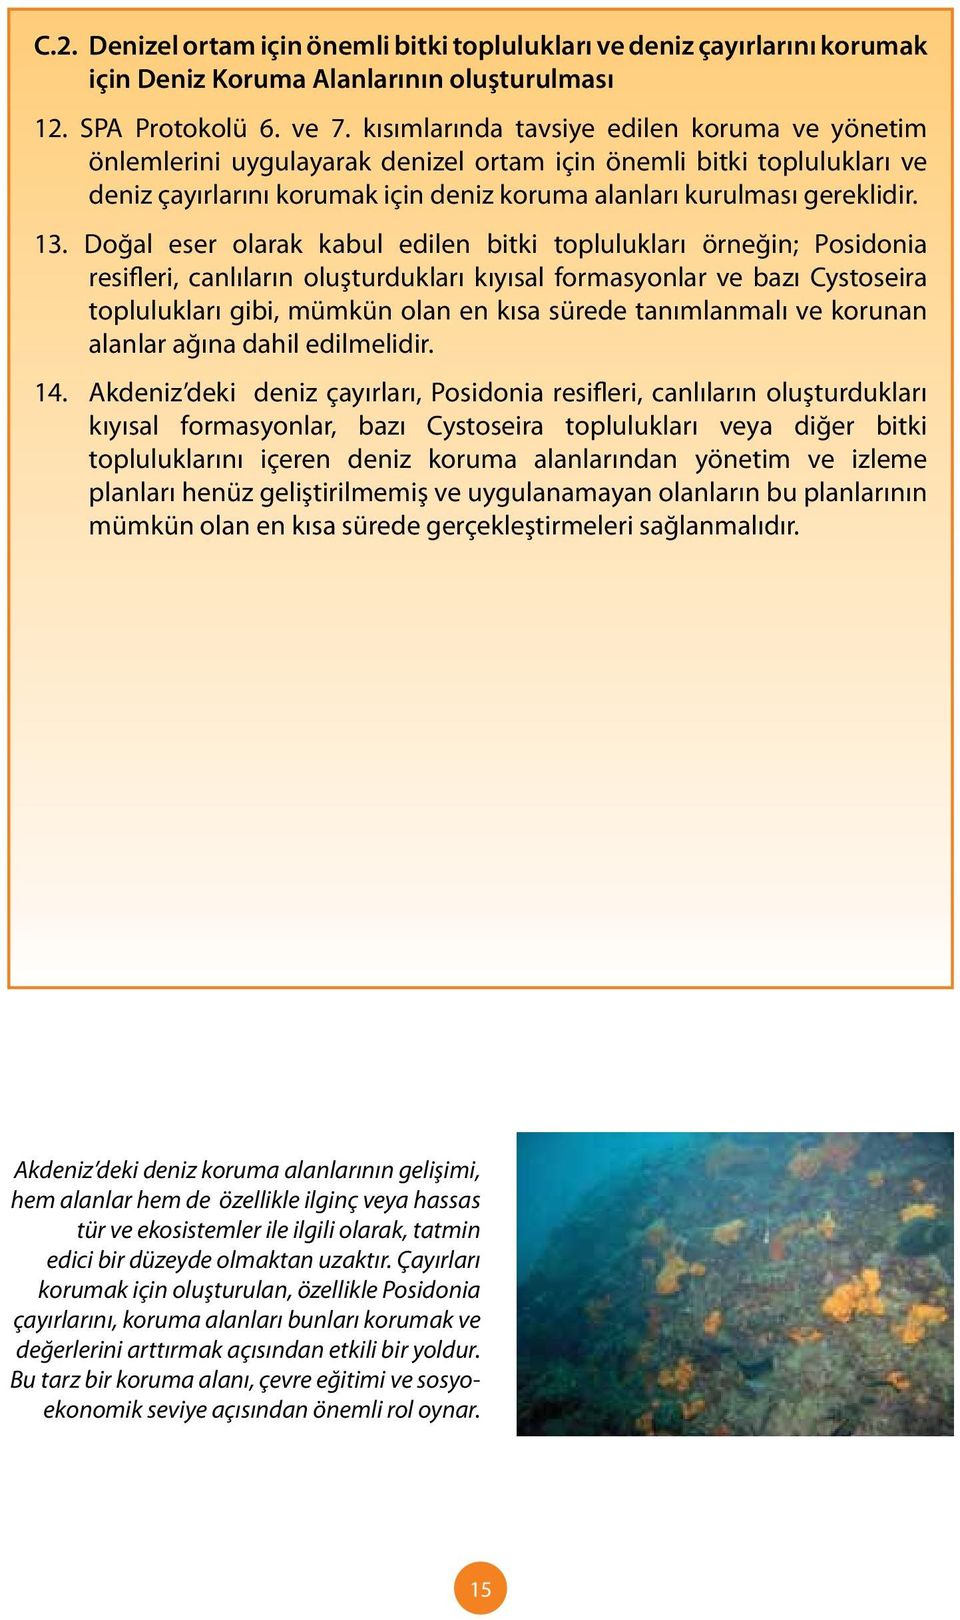 Doğal eser olarak kabul edilen bitki toplulukları örneğin; Posidonia resifleri, canlıların oluşturdukları kıyısal formasyonlar ve bazı Cystoseira toplulukları gibi, mümkün olan en kısa sürede